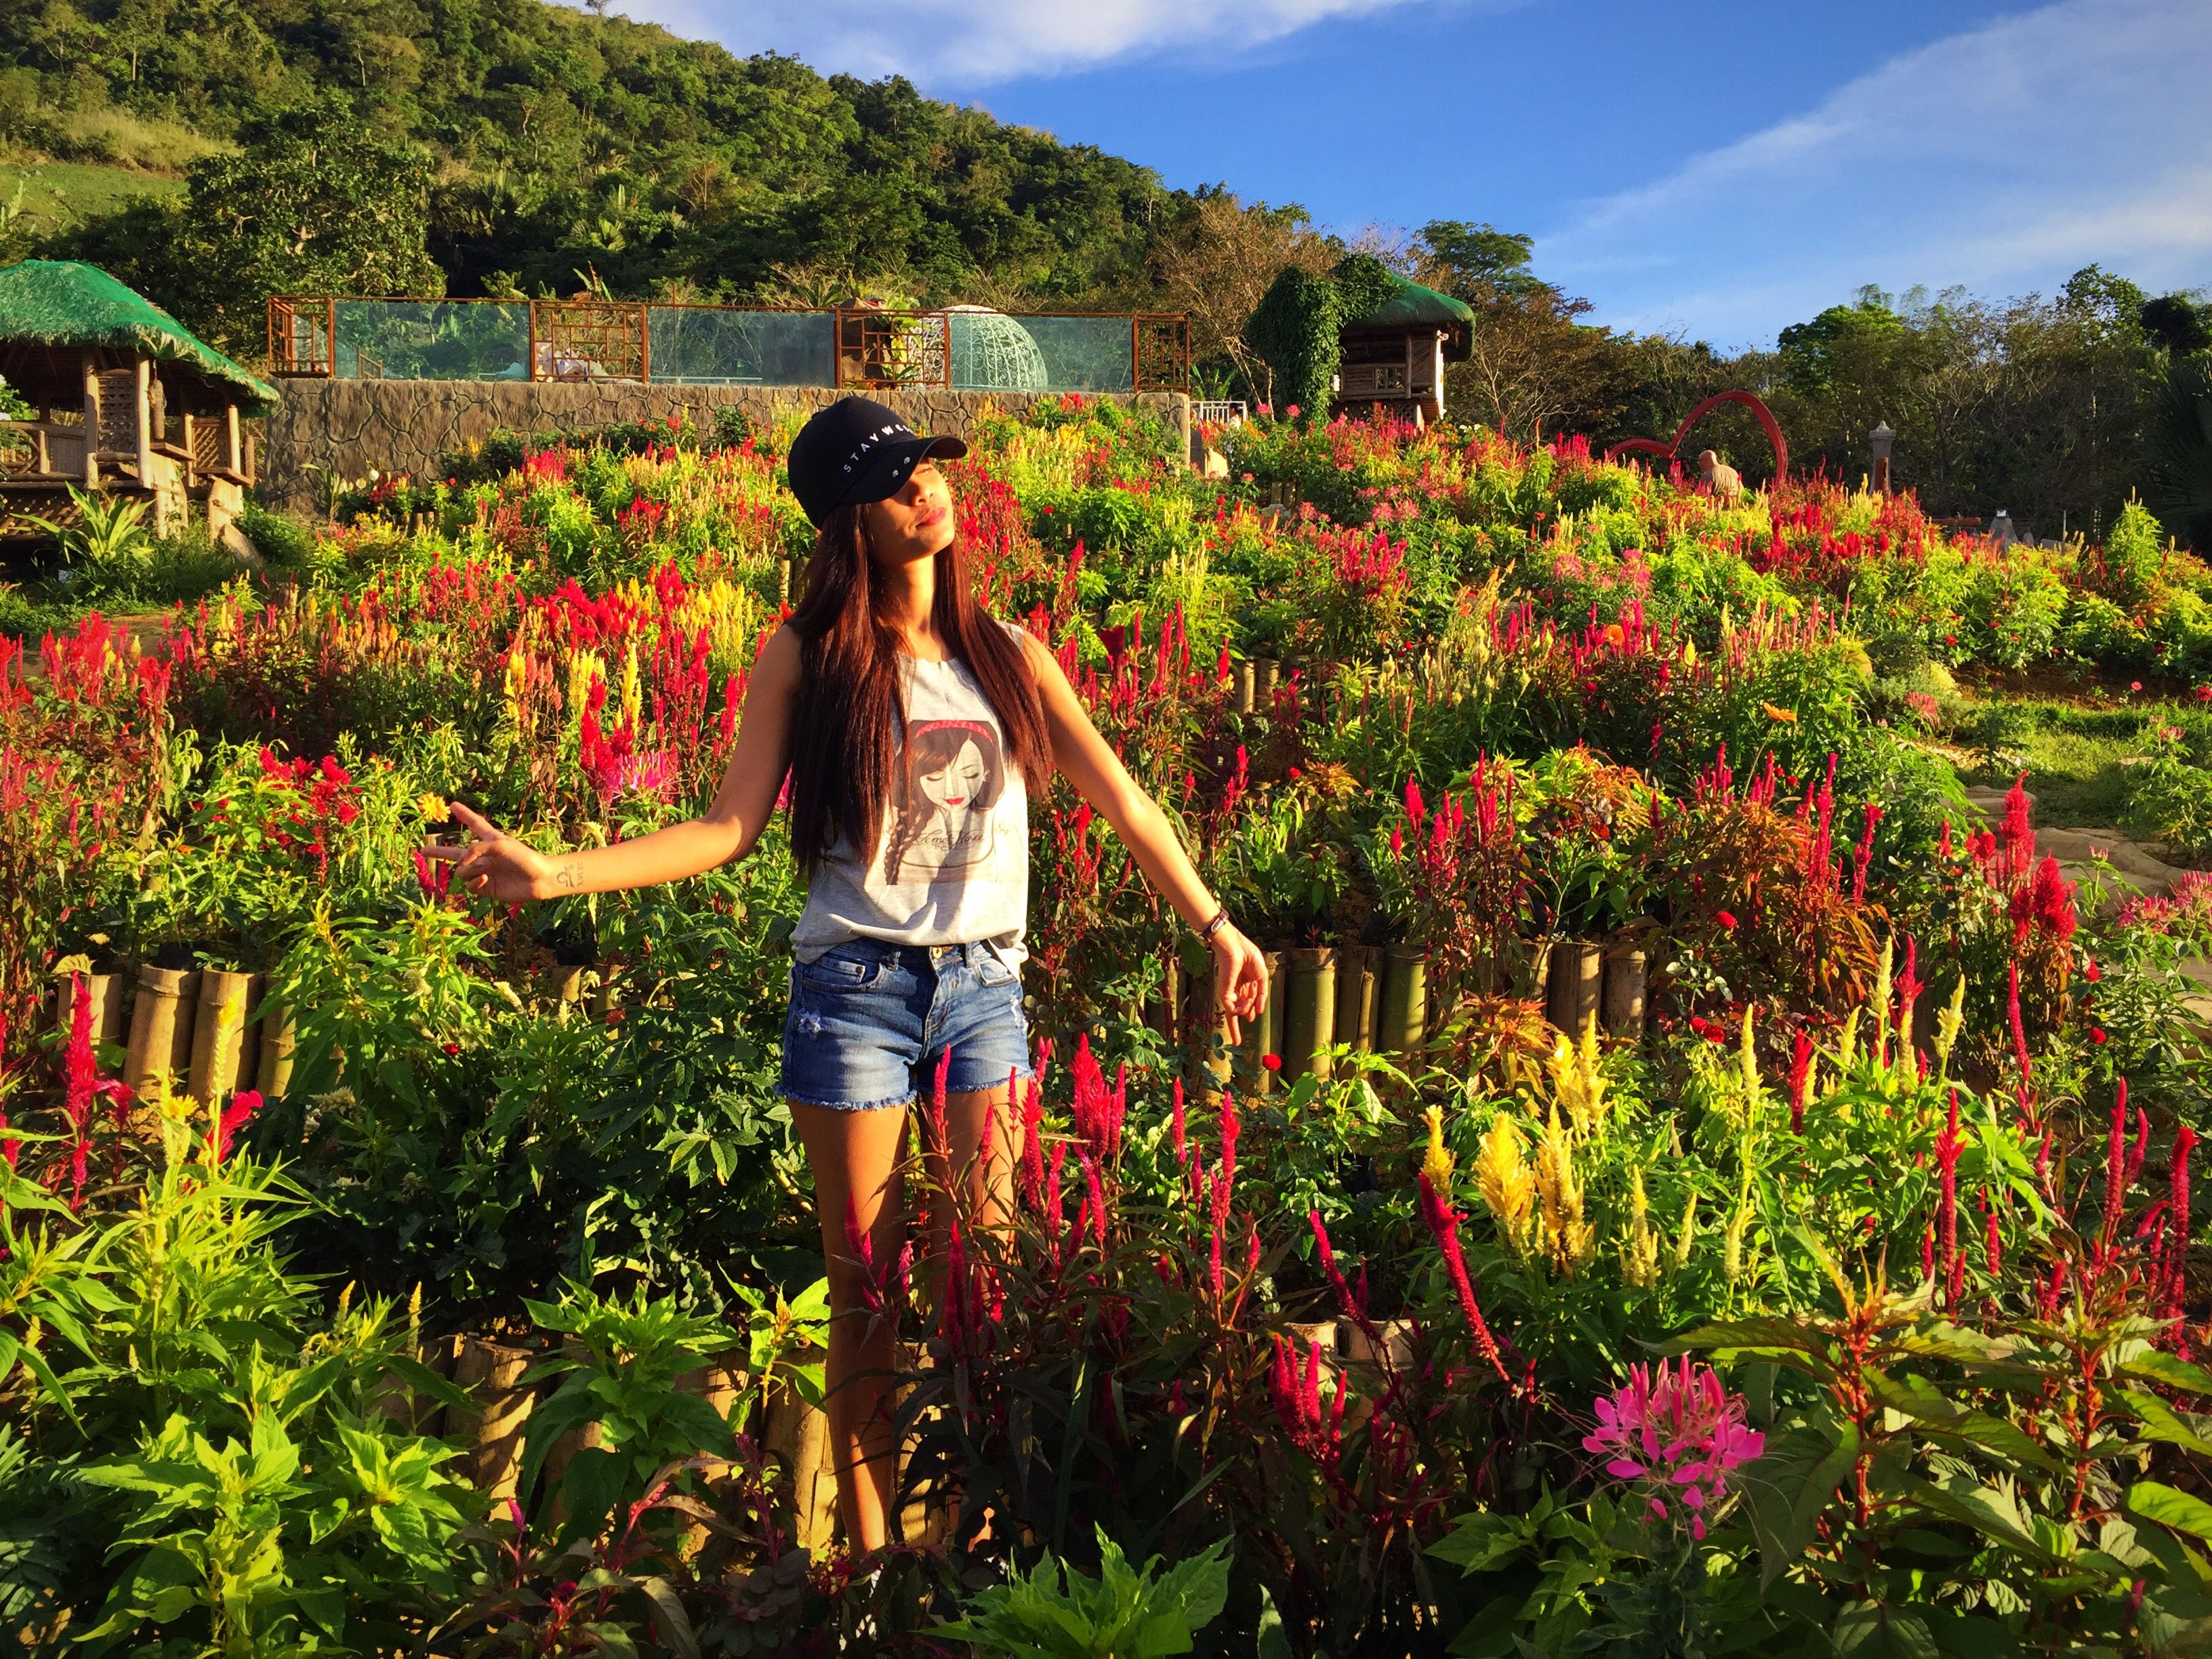 lencetravel | flower garden at sirao, a mountain barangay of cebu